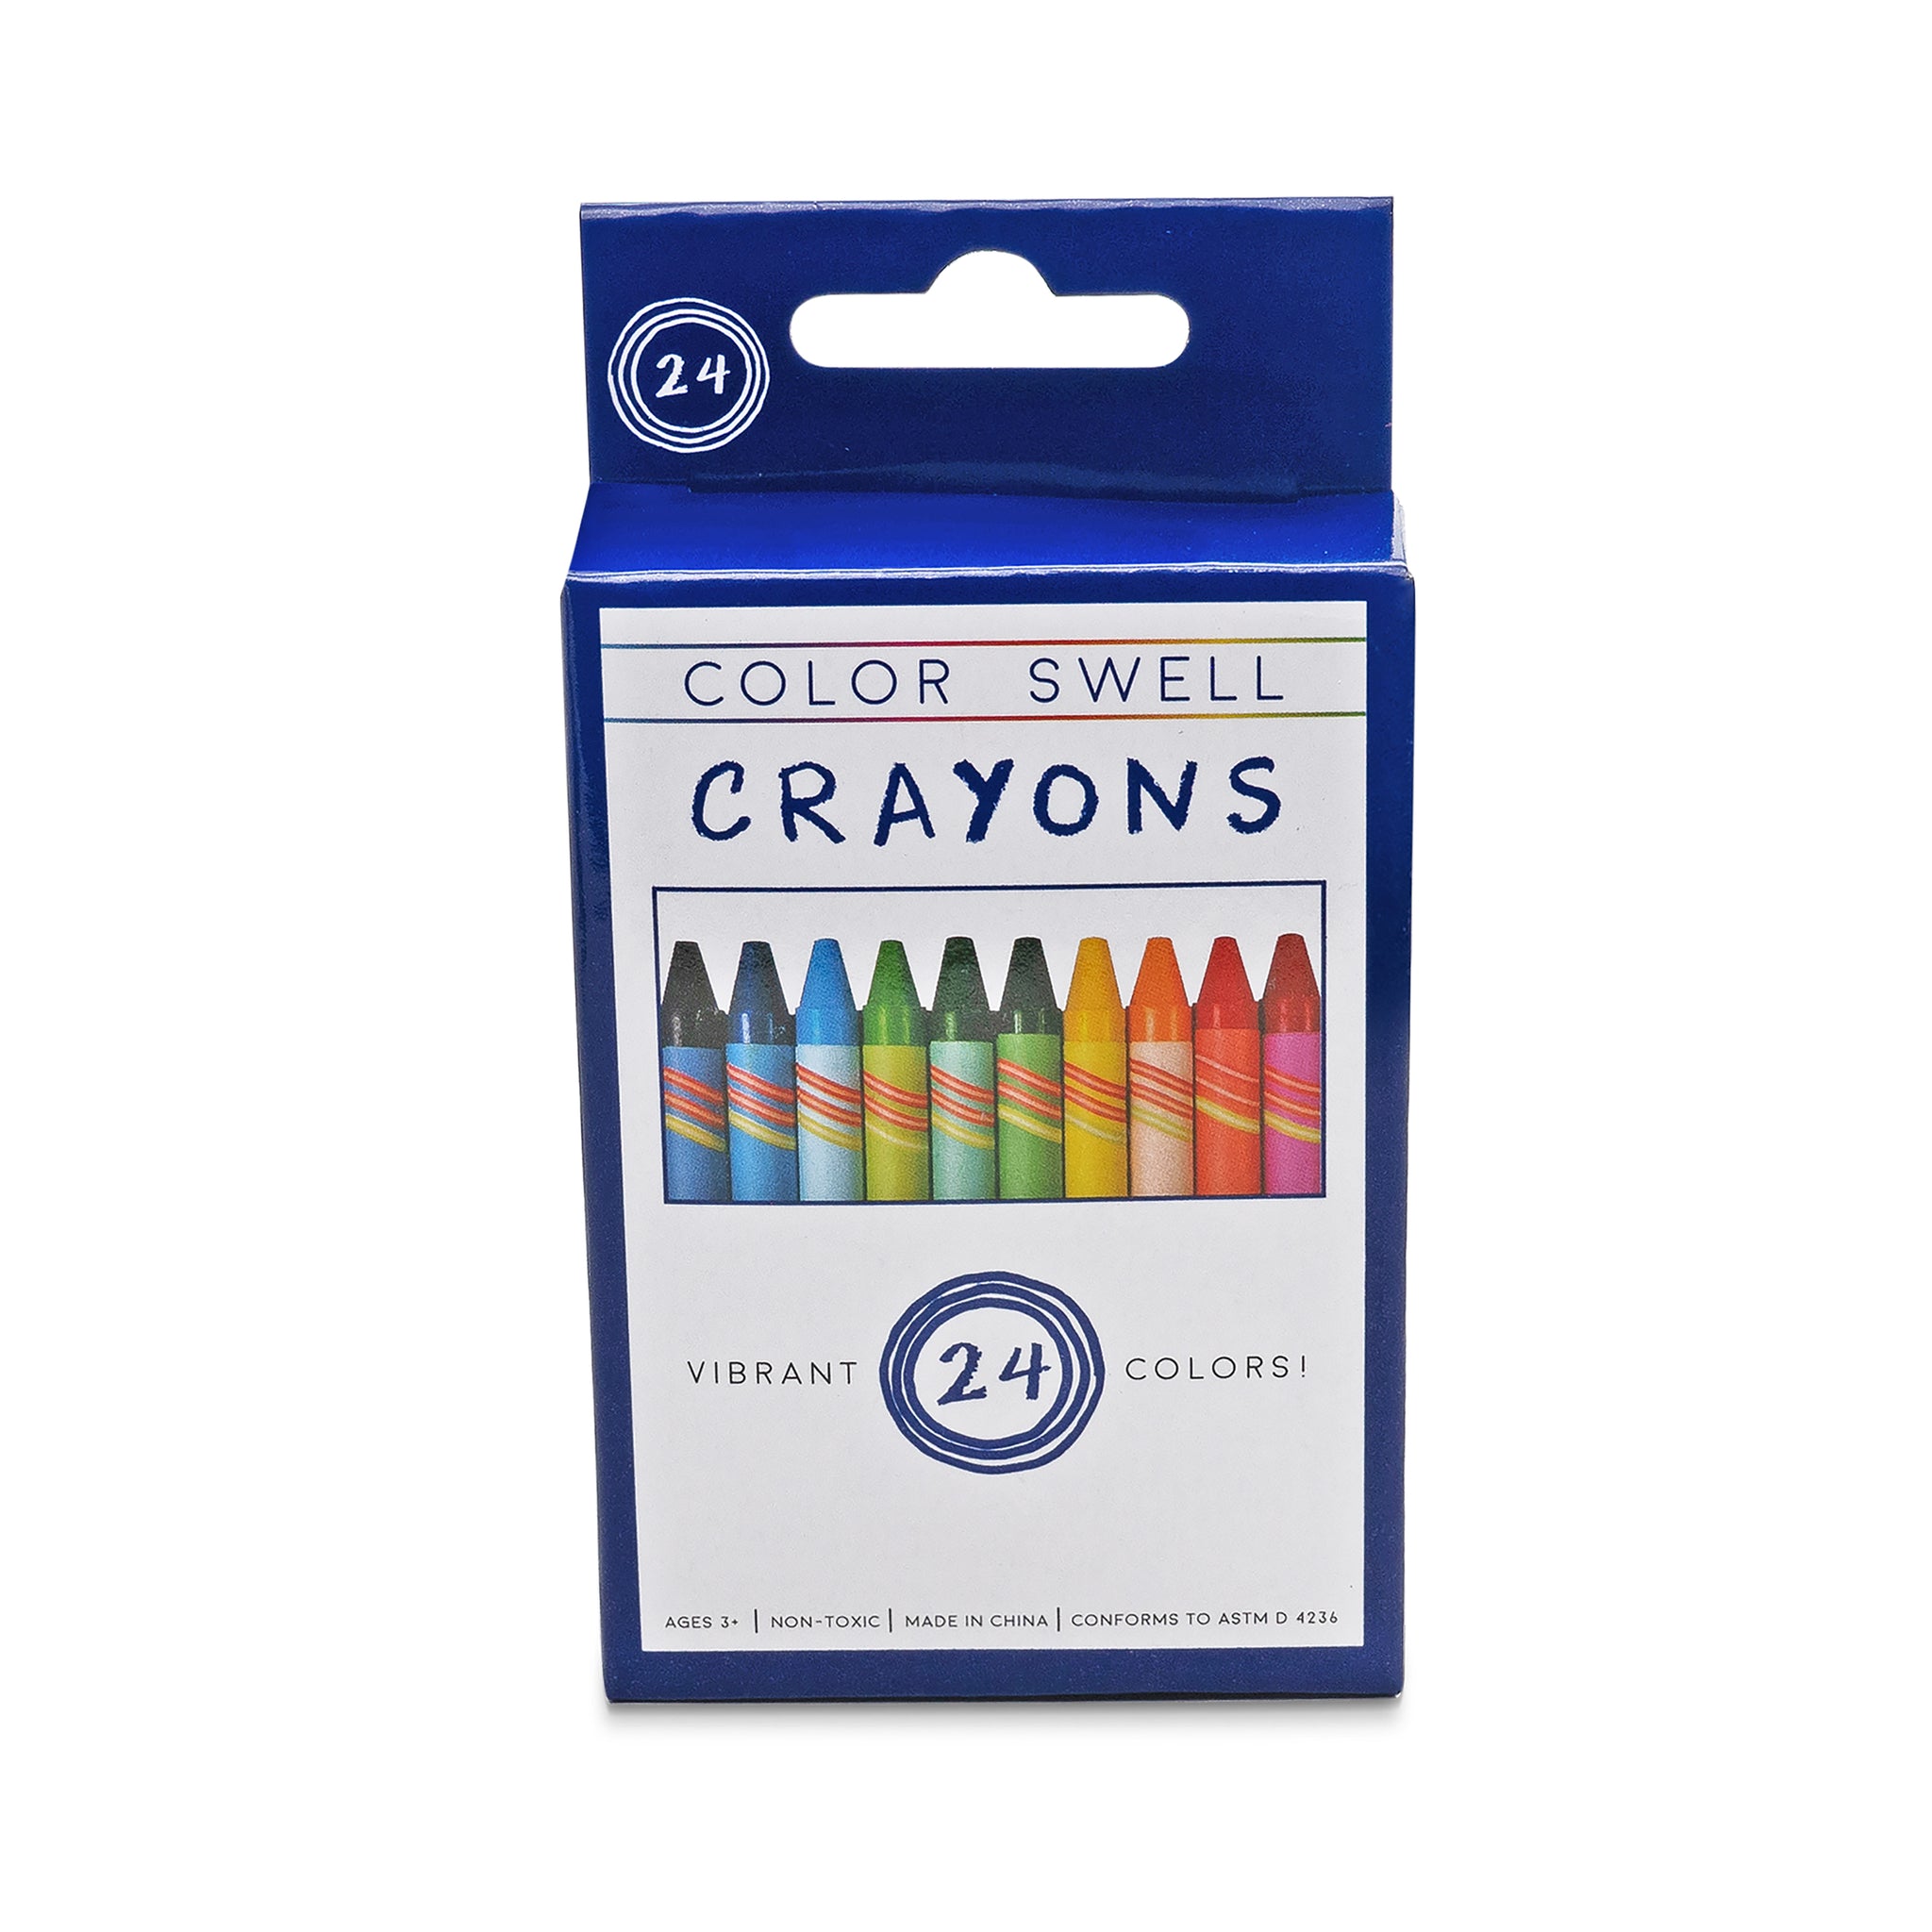 https://colorswell.com/cdn/shop/products/Crayons-box-2_1024x1024@2x.jpg?v=1697223425